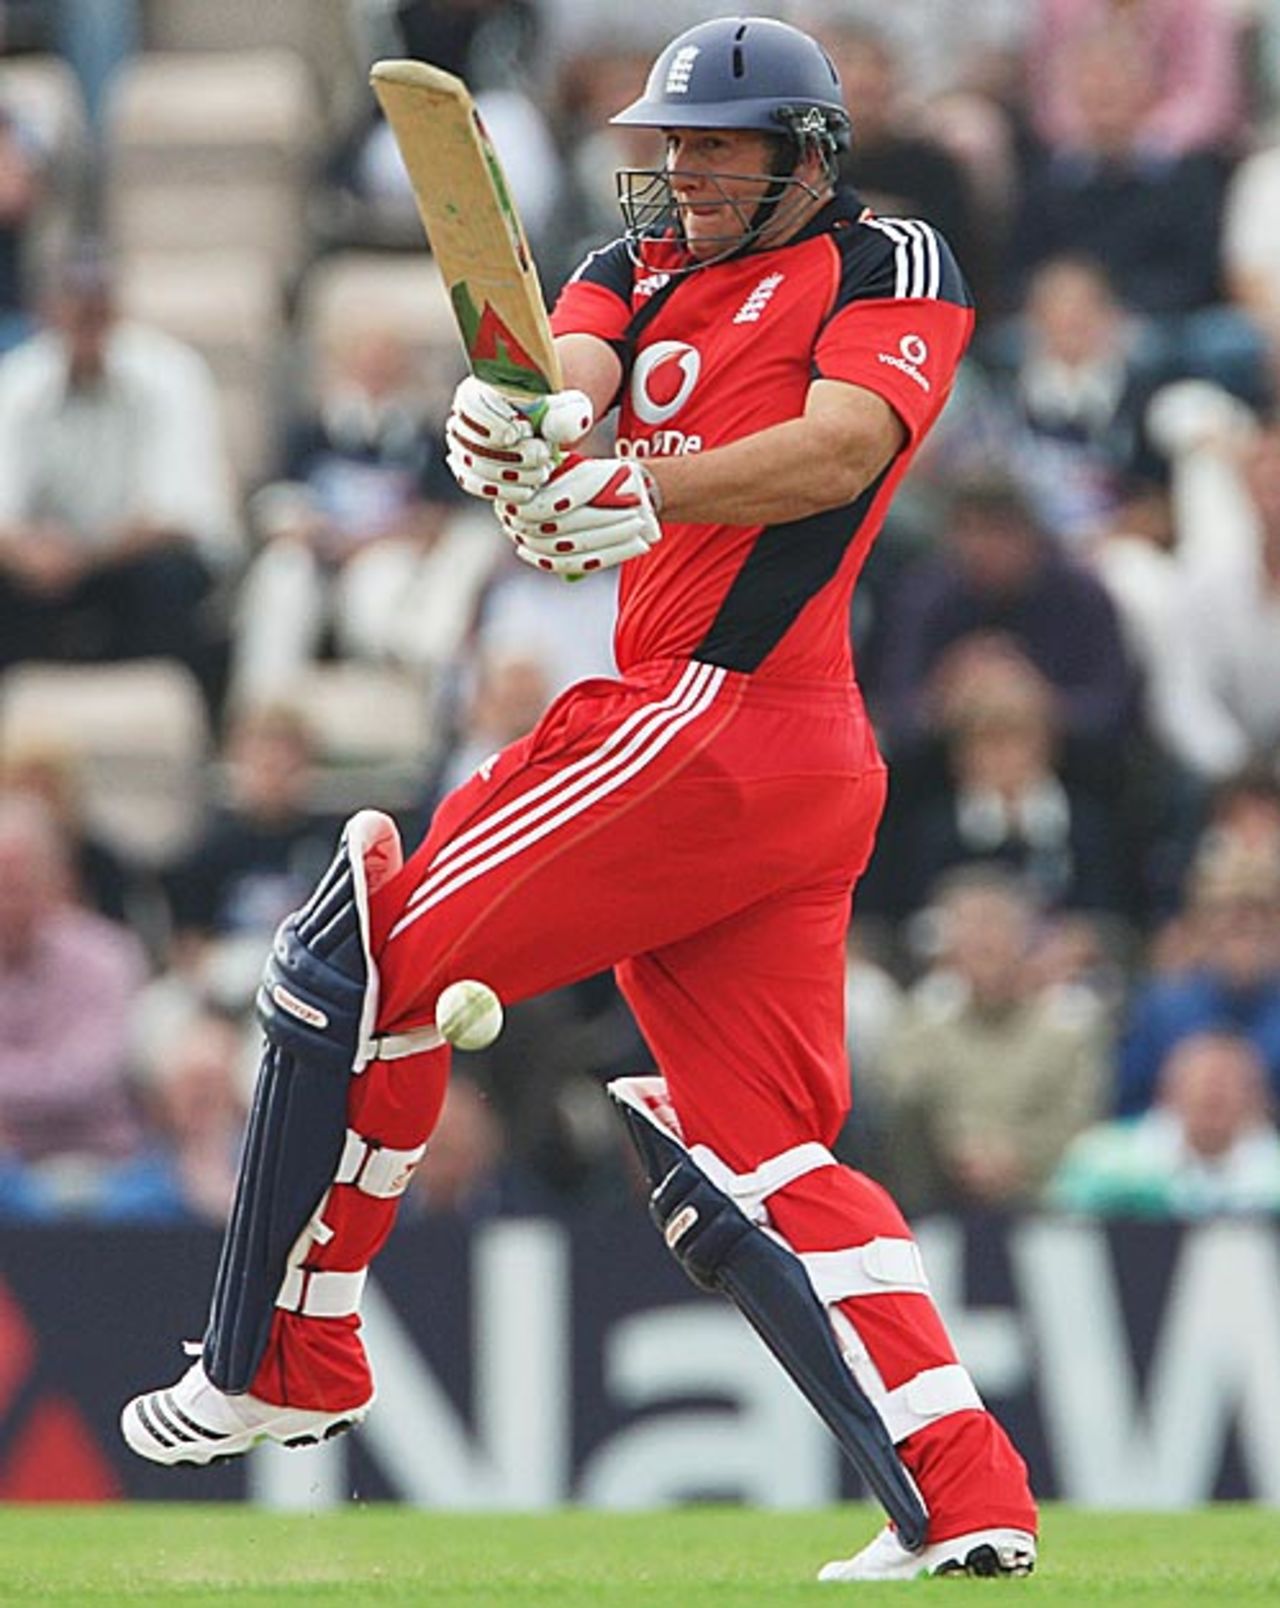 Tim Bresnan pulls late in the innings, England v Australia, 3rd ODI, Southampton, September 9, 2009